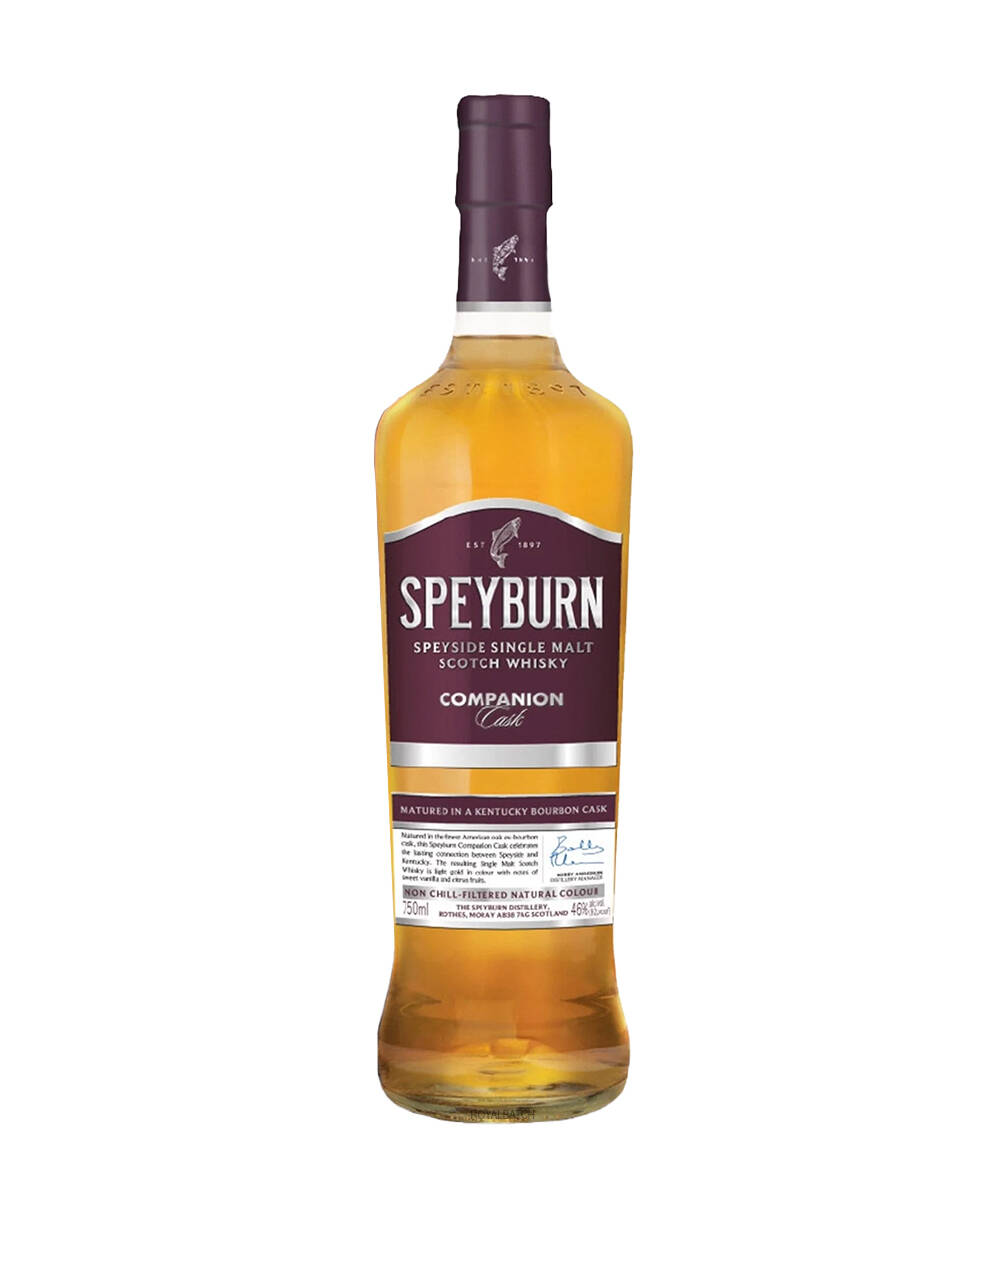 Speyburn Companion Cask Single Malt Scotch Whisky